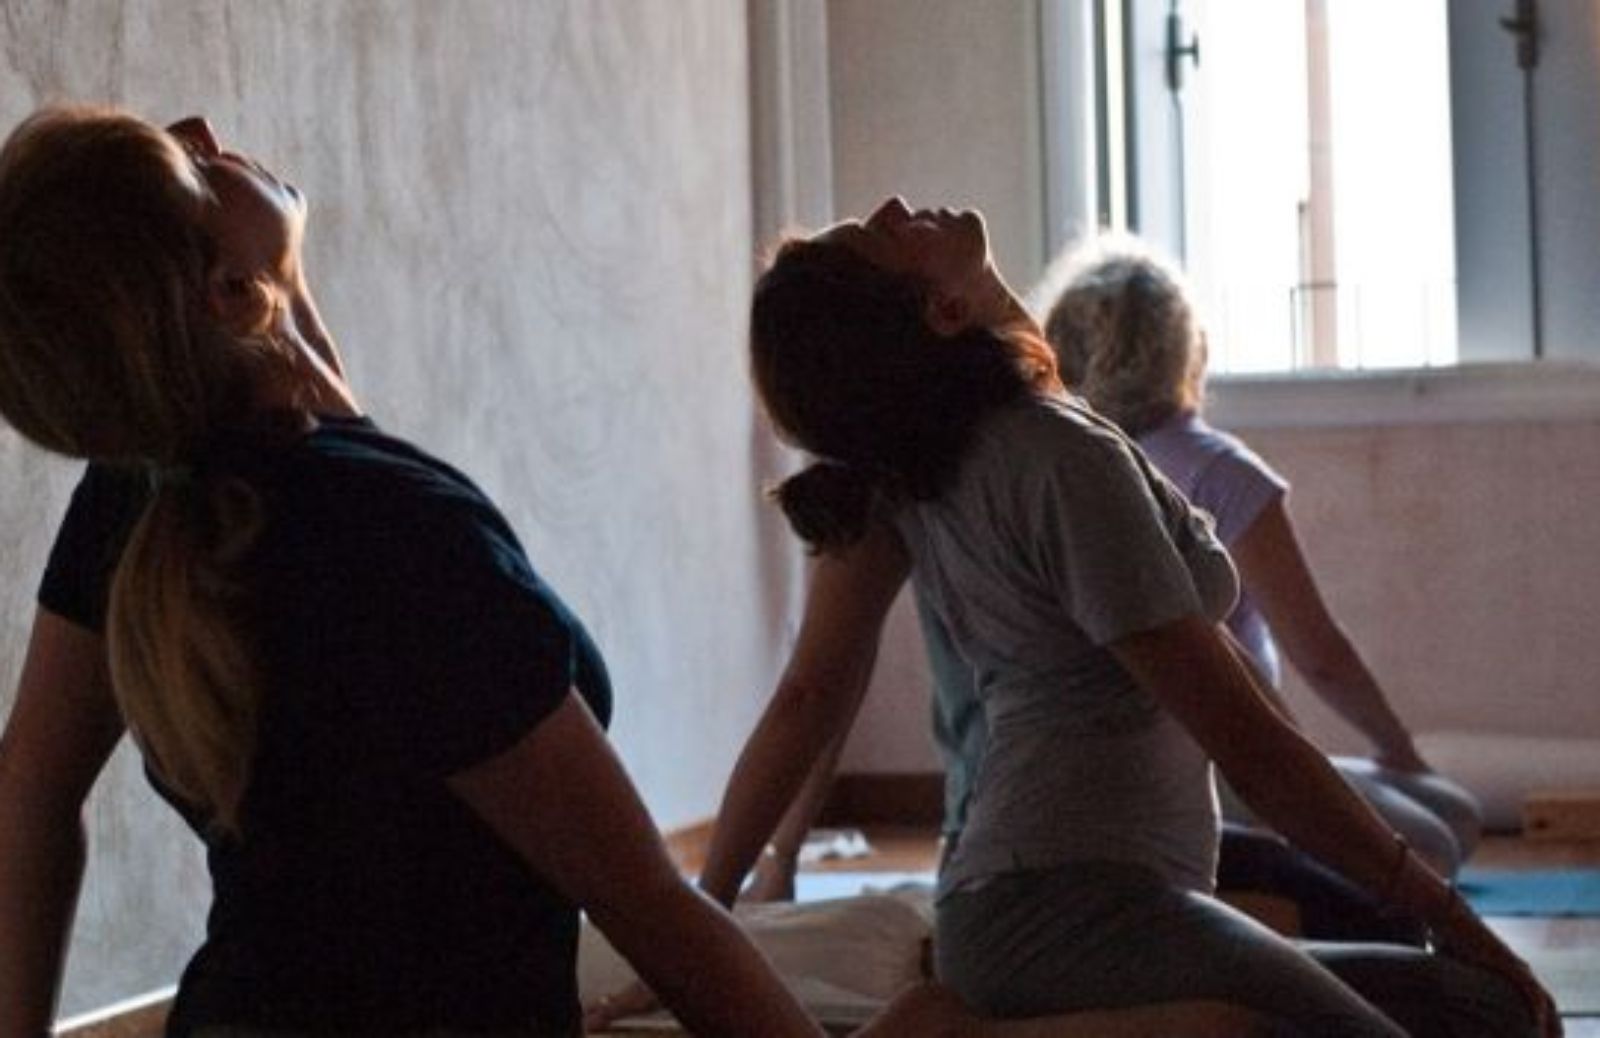 Come imparare a fare yoga: lo stretching iniziale